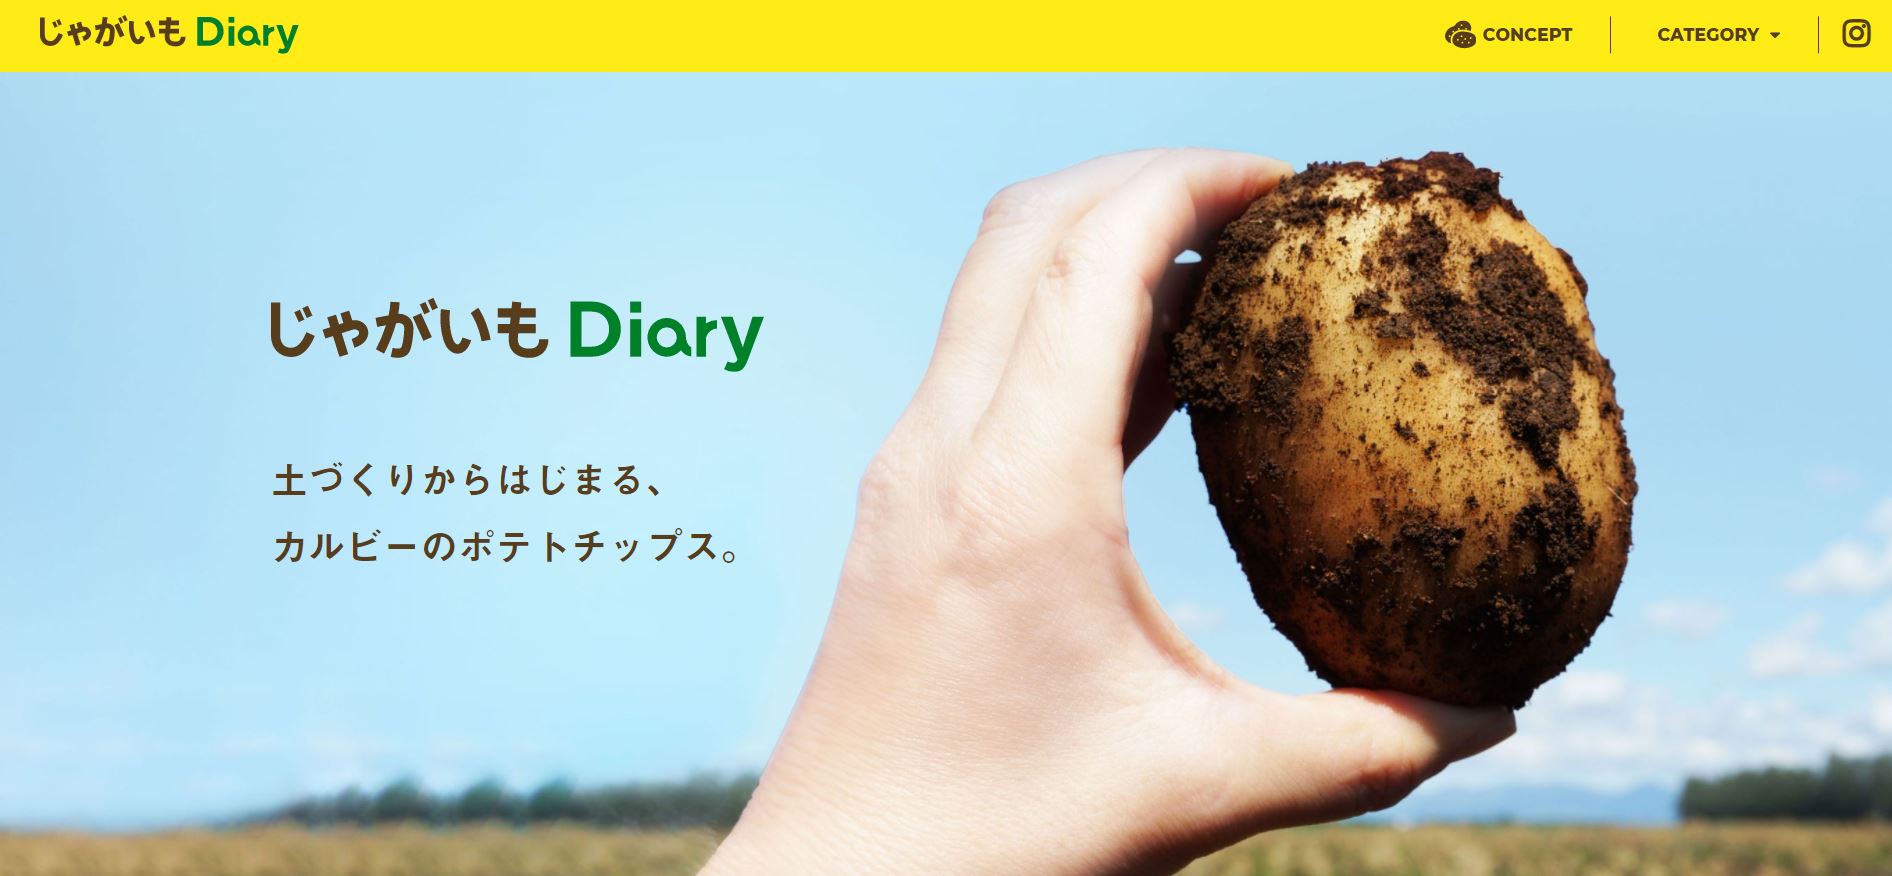 カルビーグループとジャガイモの今をお伝えするオウンドメディア じゃがいも Diary が初の大幅リニューアル カルビー株式会社のプレスリリース